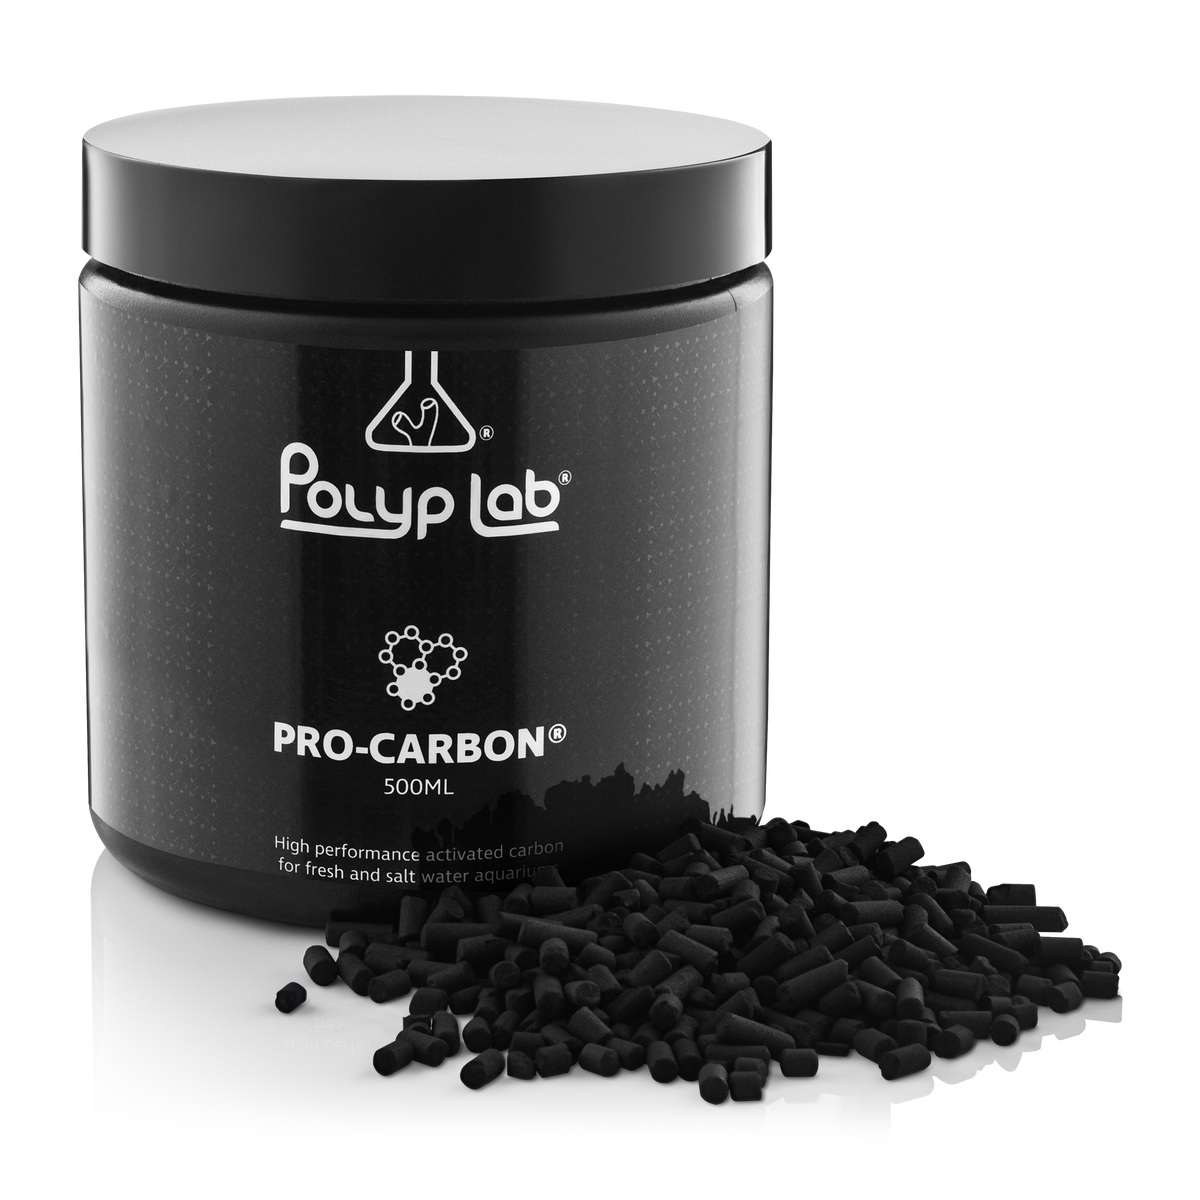 Polyp Lab Pro Carbon